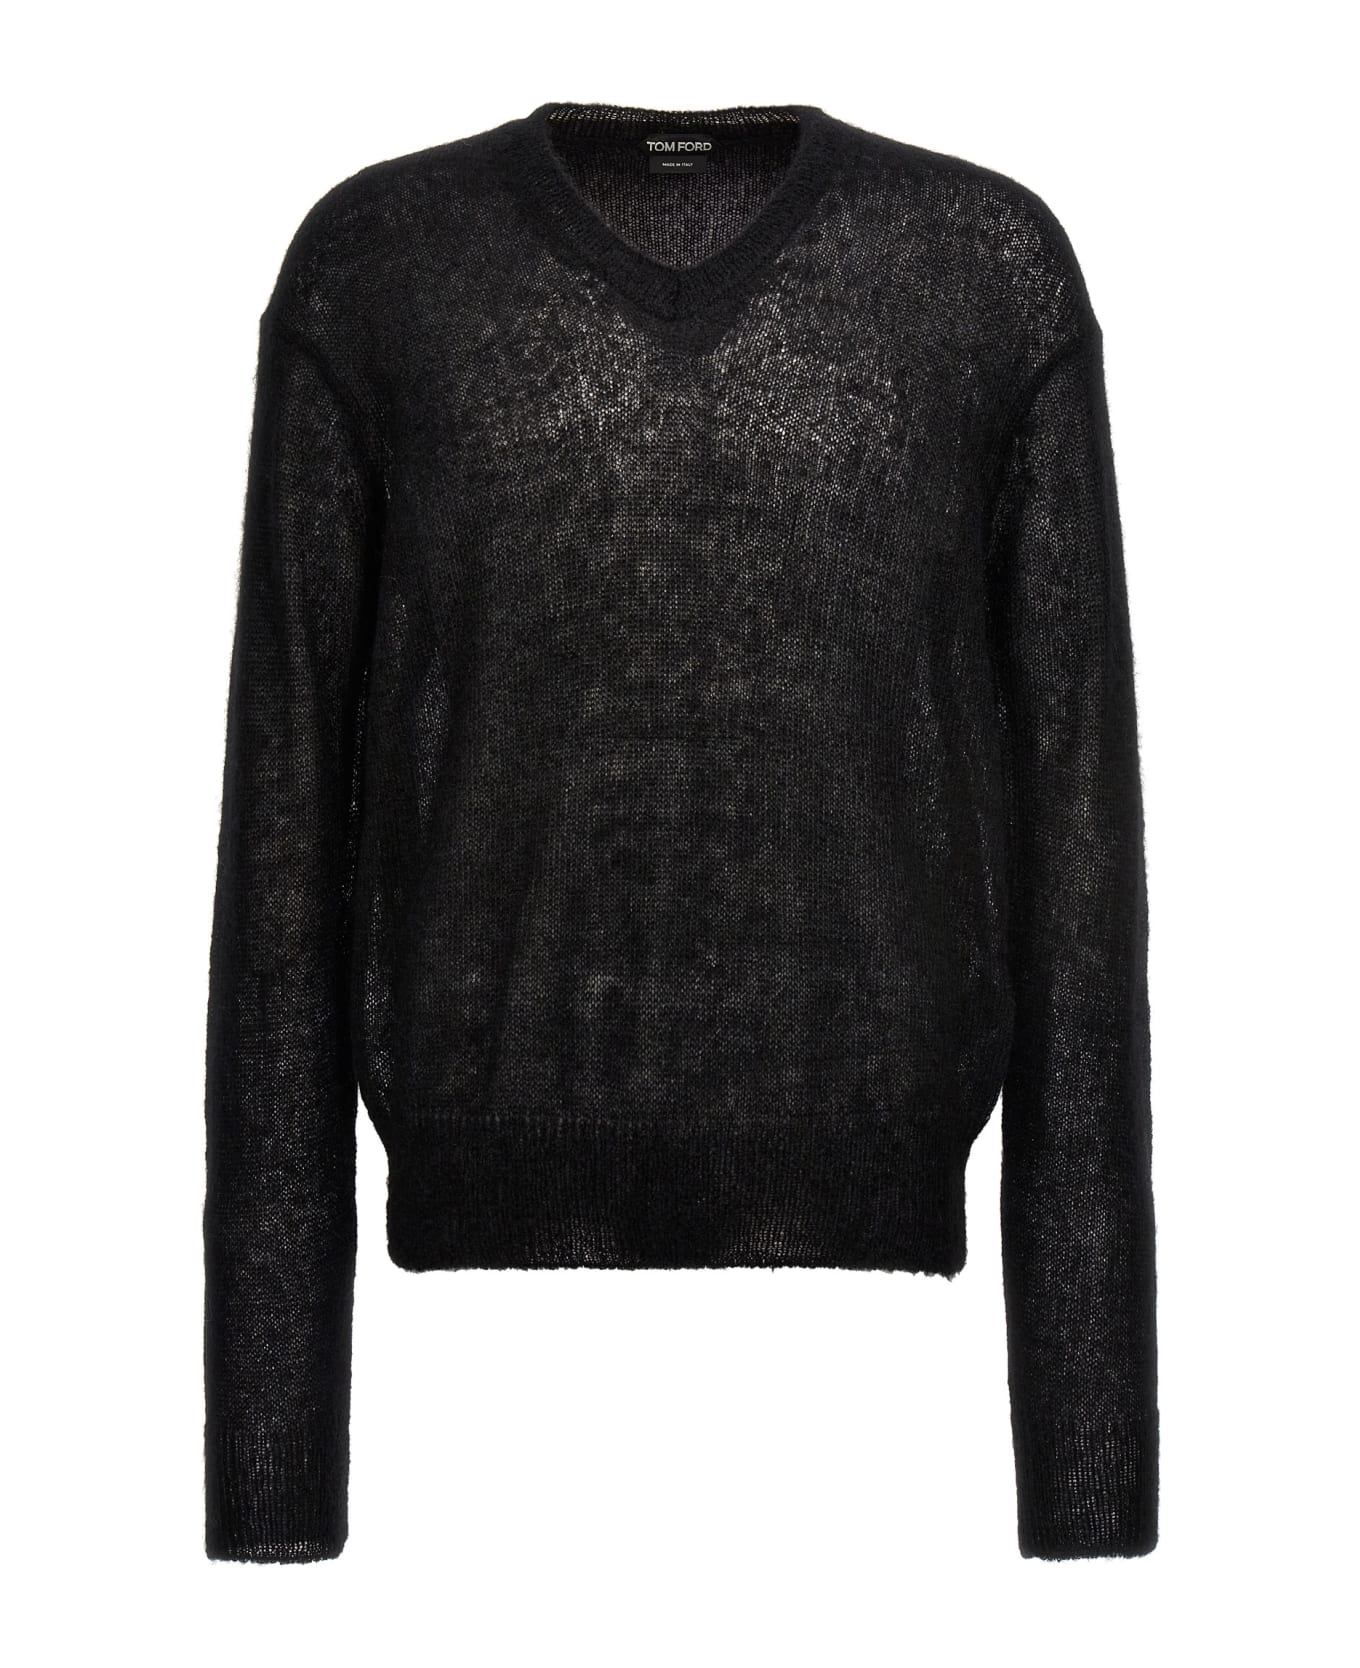 Tom Ford Mohair Sweater - Black ニットウェア